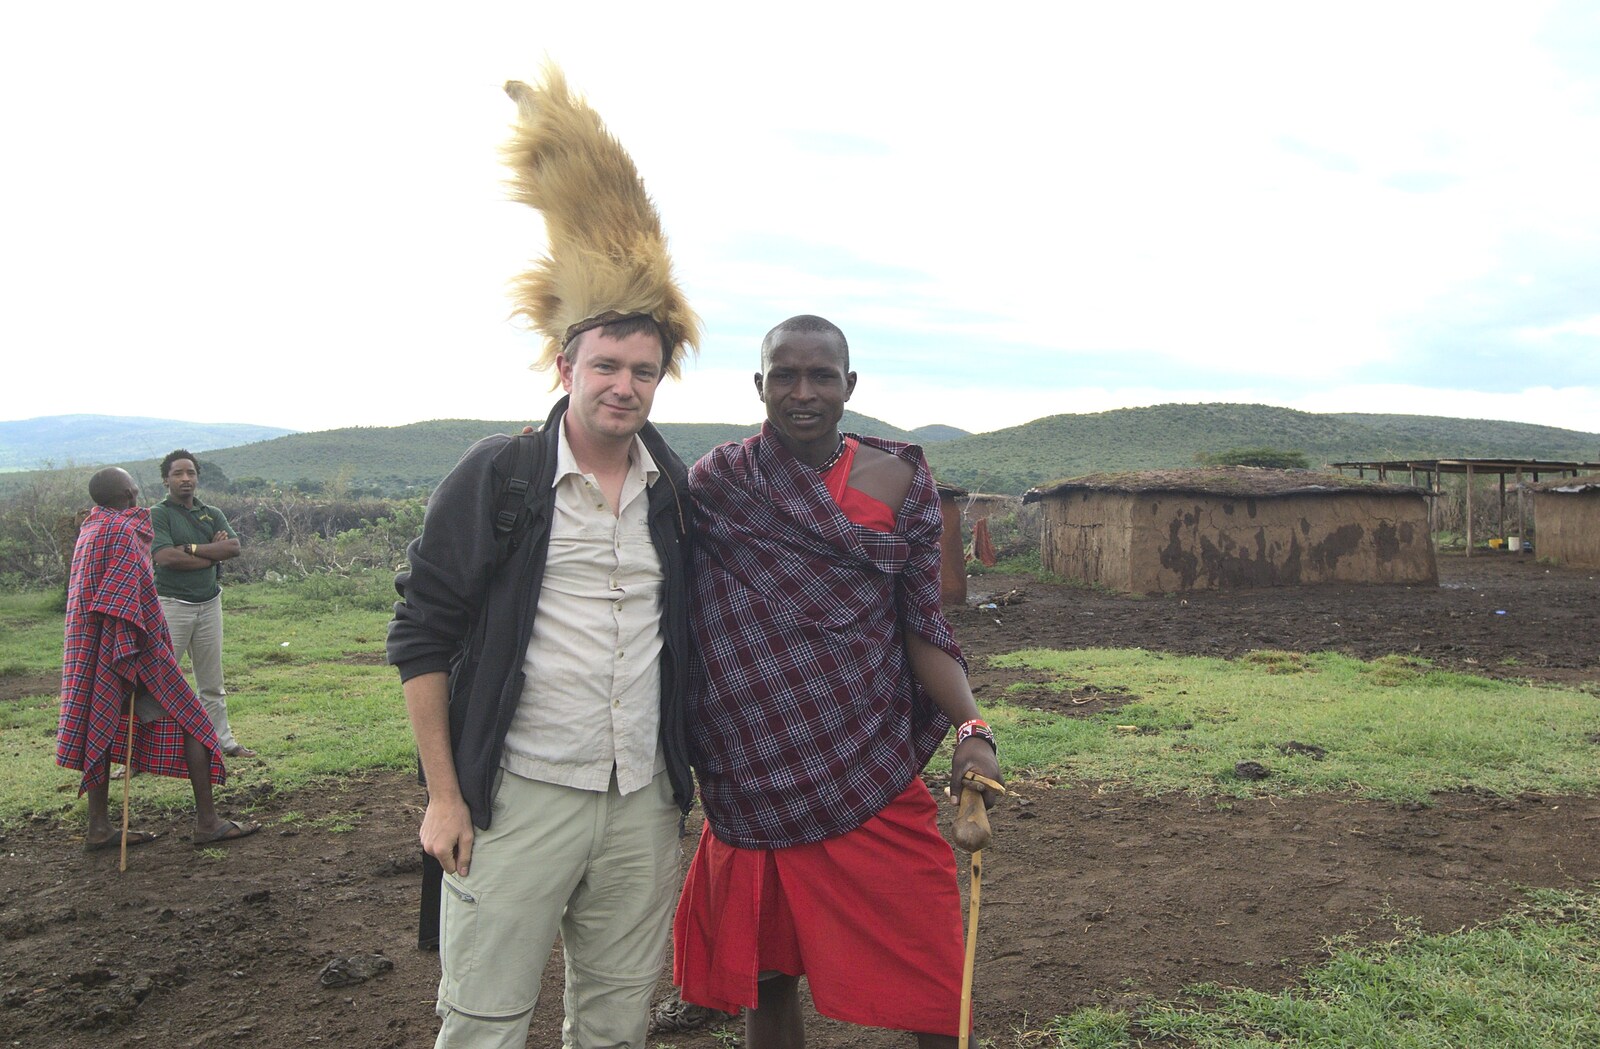 Nosher and the chief's son from Maasai Mara Safari and a Maasai Village, Ololaimutia, Kenya - 5th November 2010